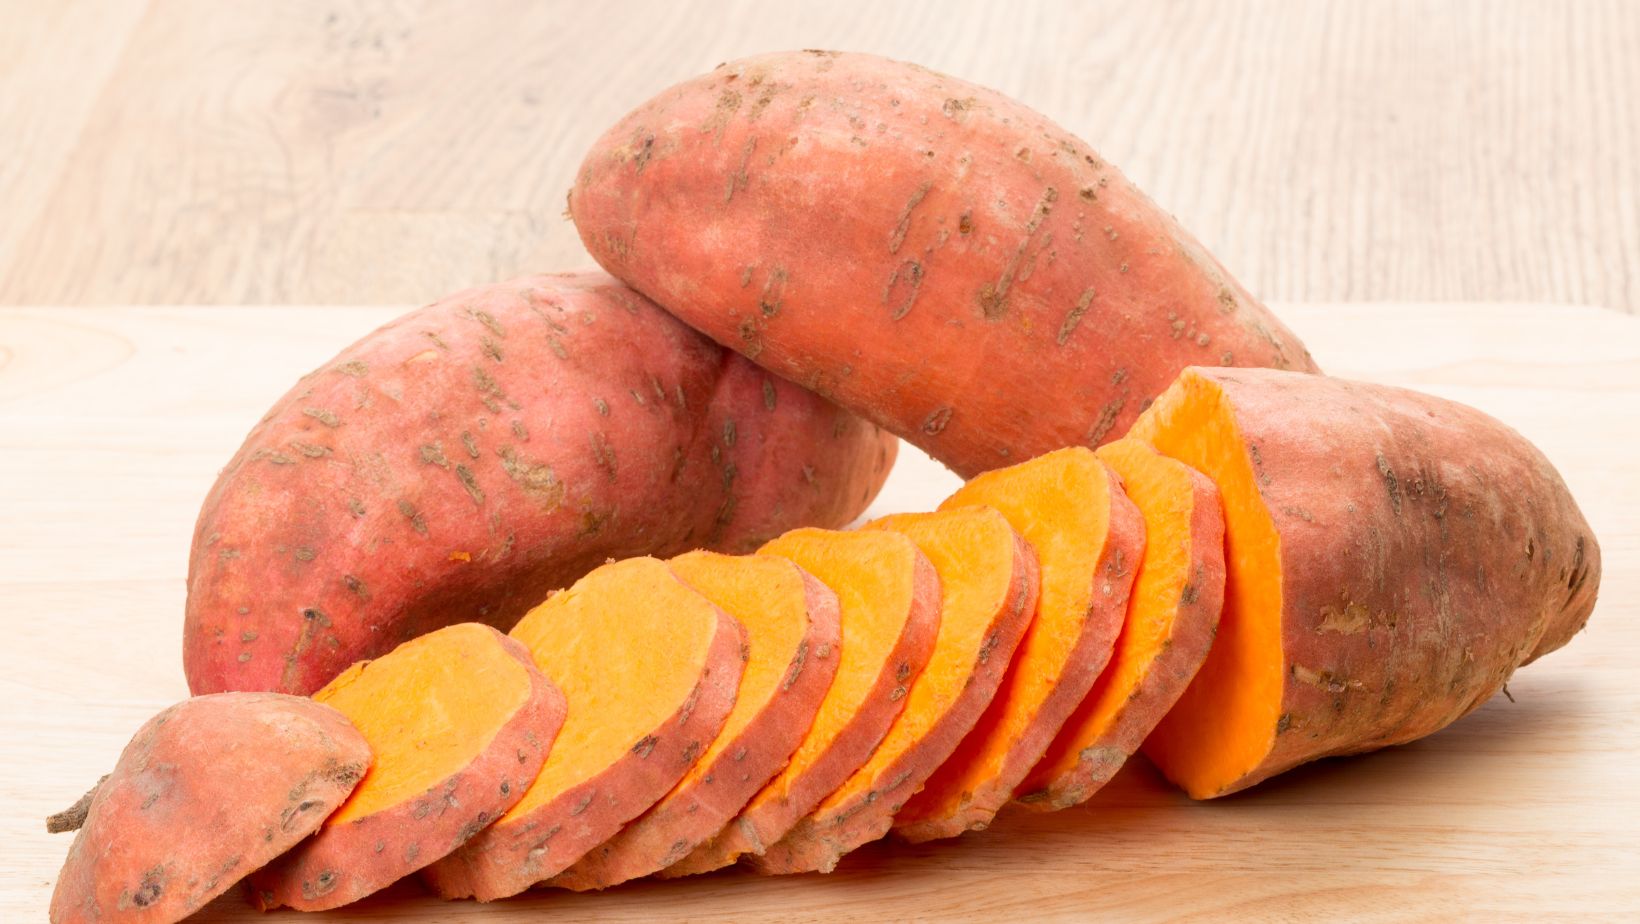 is sweet potato good for keto diet